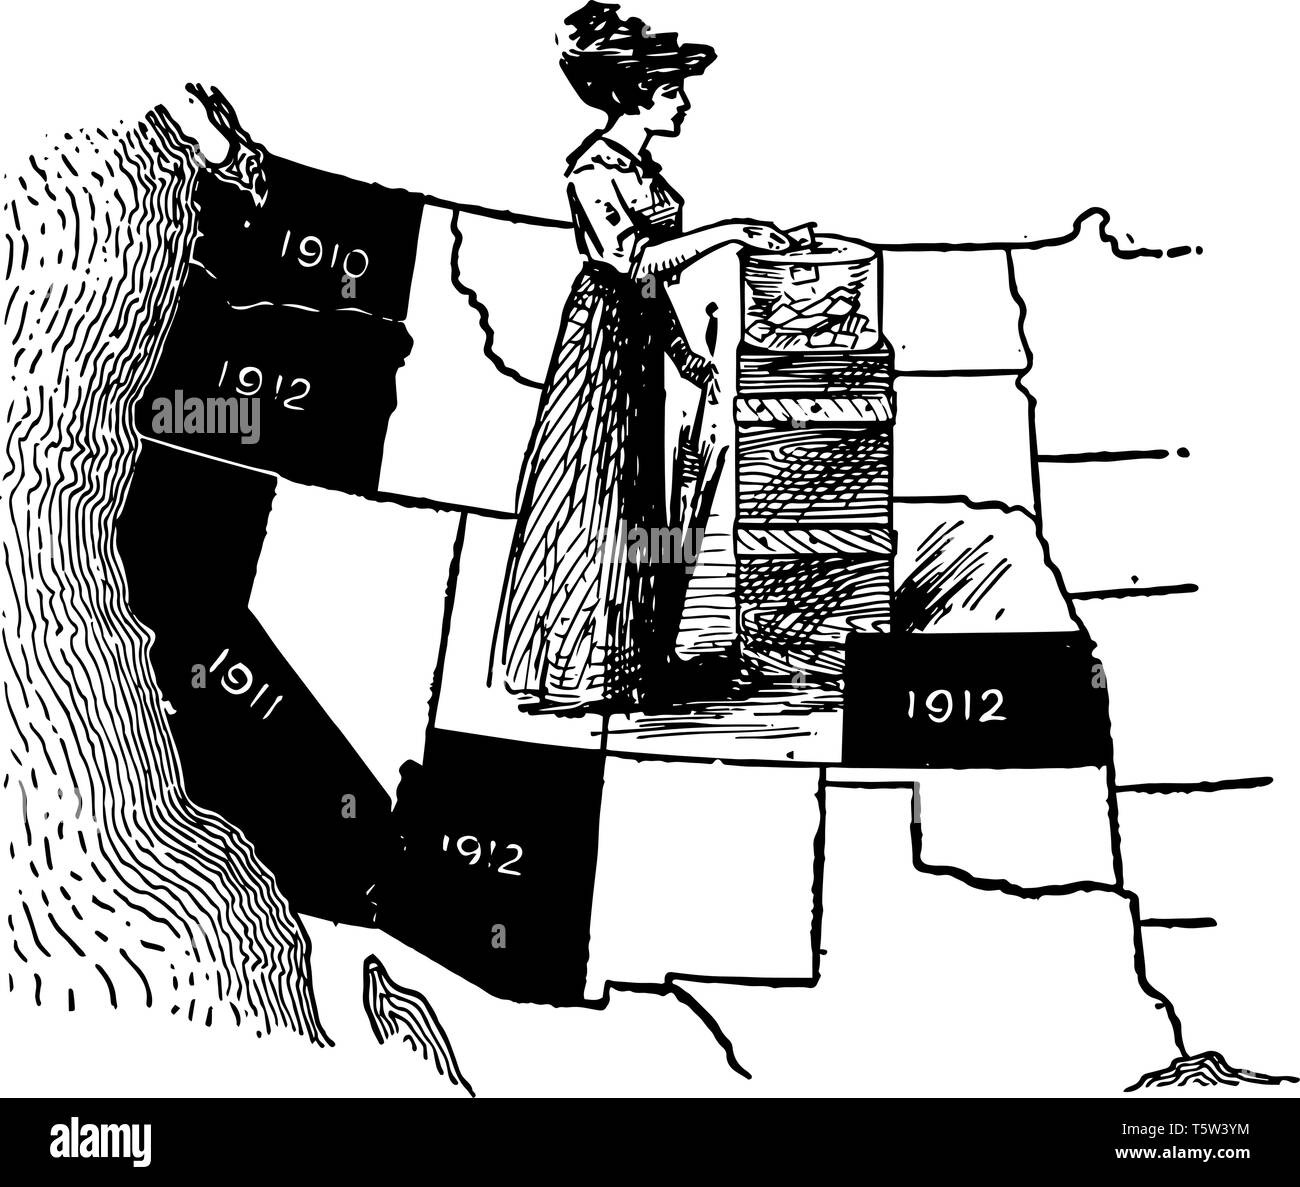 Gli stati della metà occidentale di noi sono etichettati in una mappa per la quale anno essi hanno permesso alle donne di votare vintage disegno della linea. Illustrazione Vettoriale